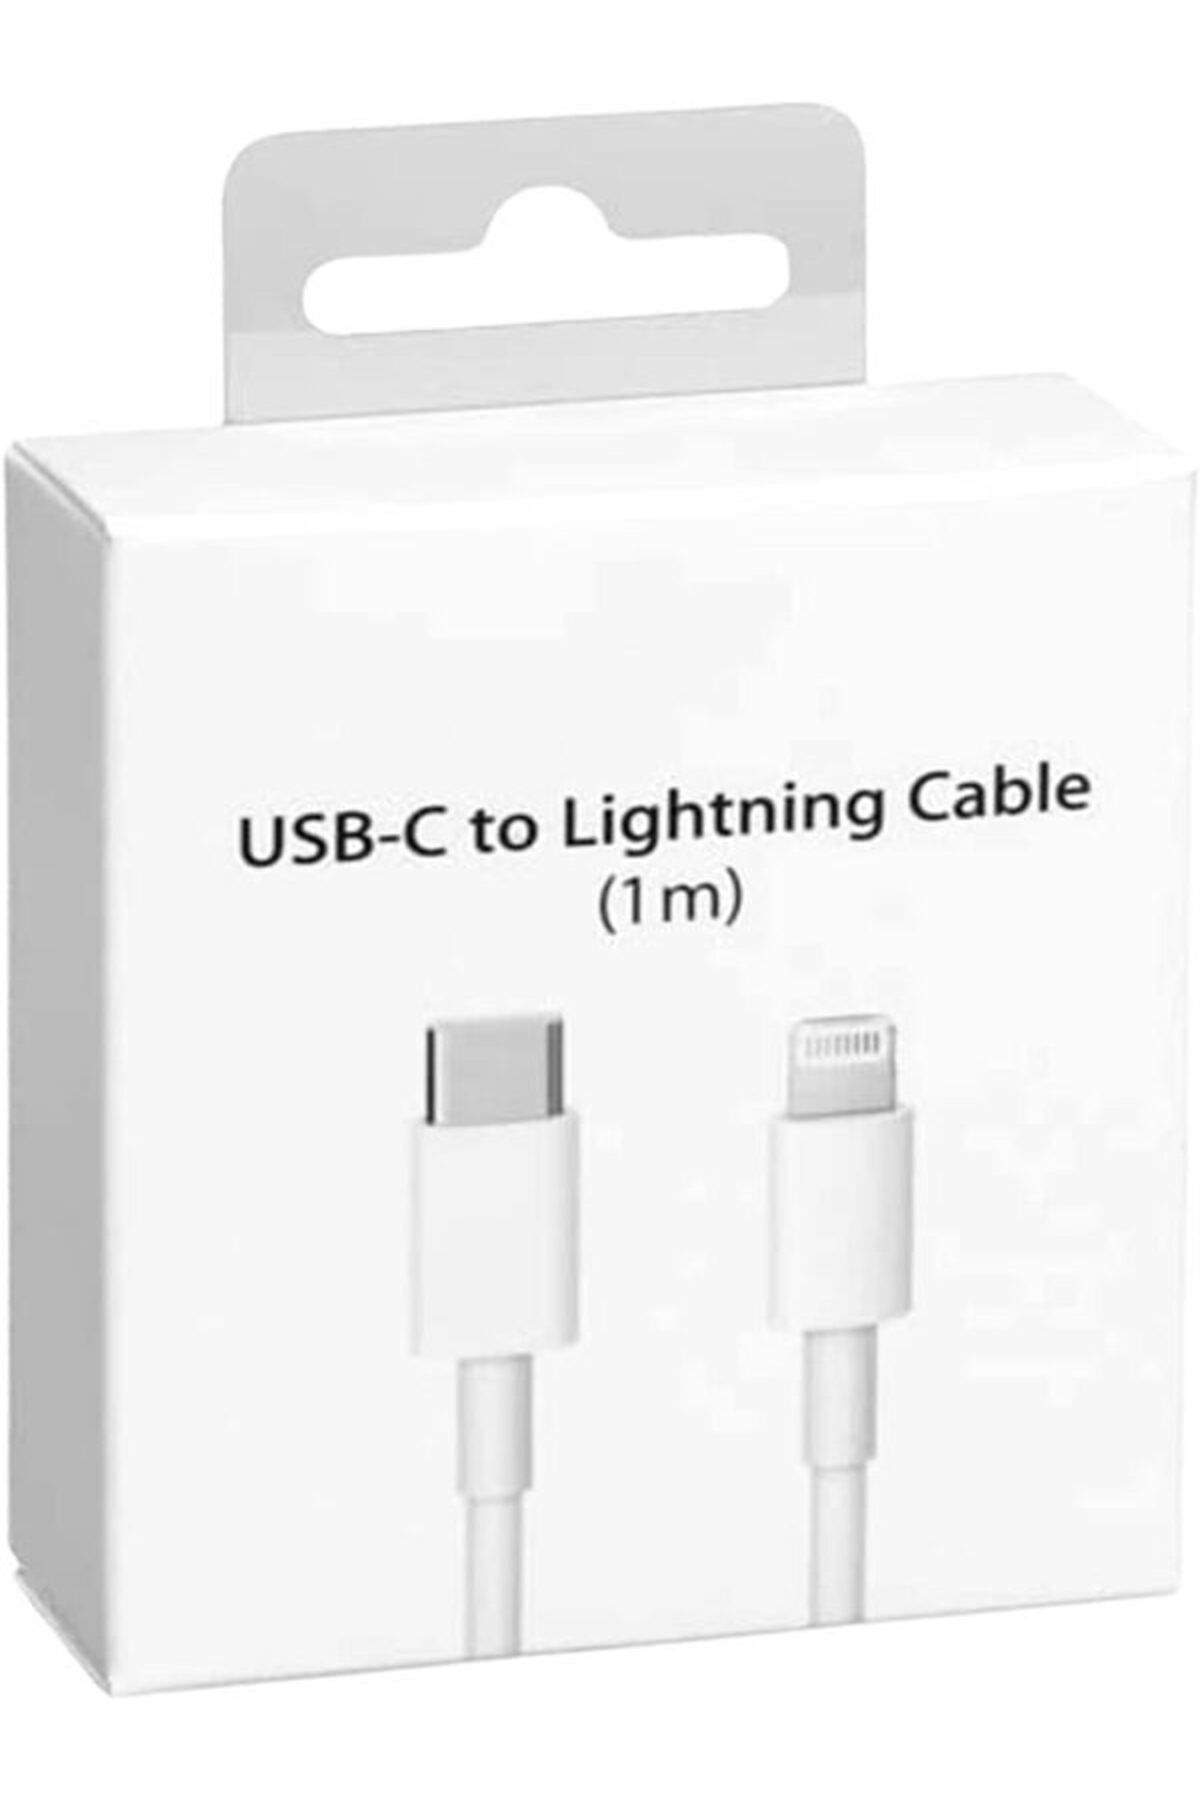 Зарядка lightning usb c. Кабель Apple USB - Lightning (md819zm/a) 2 м. Кабель Apple Lightning to USB 2m md819zm/a. Кабель Apple md819zm/a Lightning MFI-USB 2.0 белый 2м. Кабель Apple USB - Lightning (mque2zm/a) 1 м.